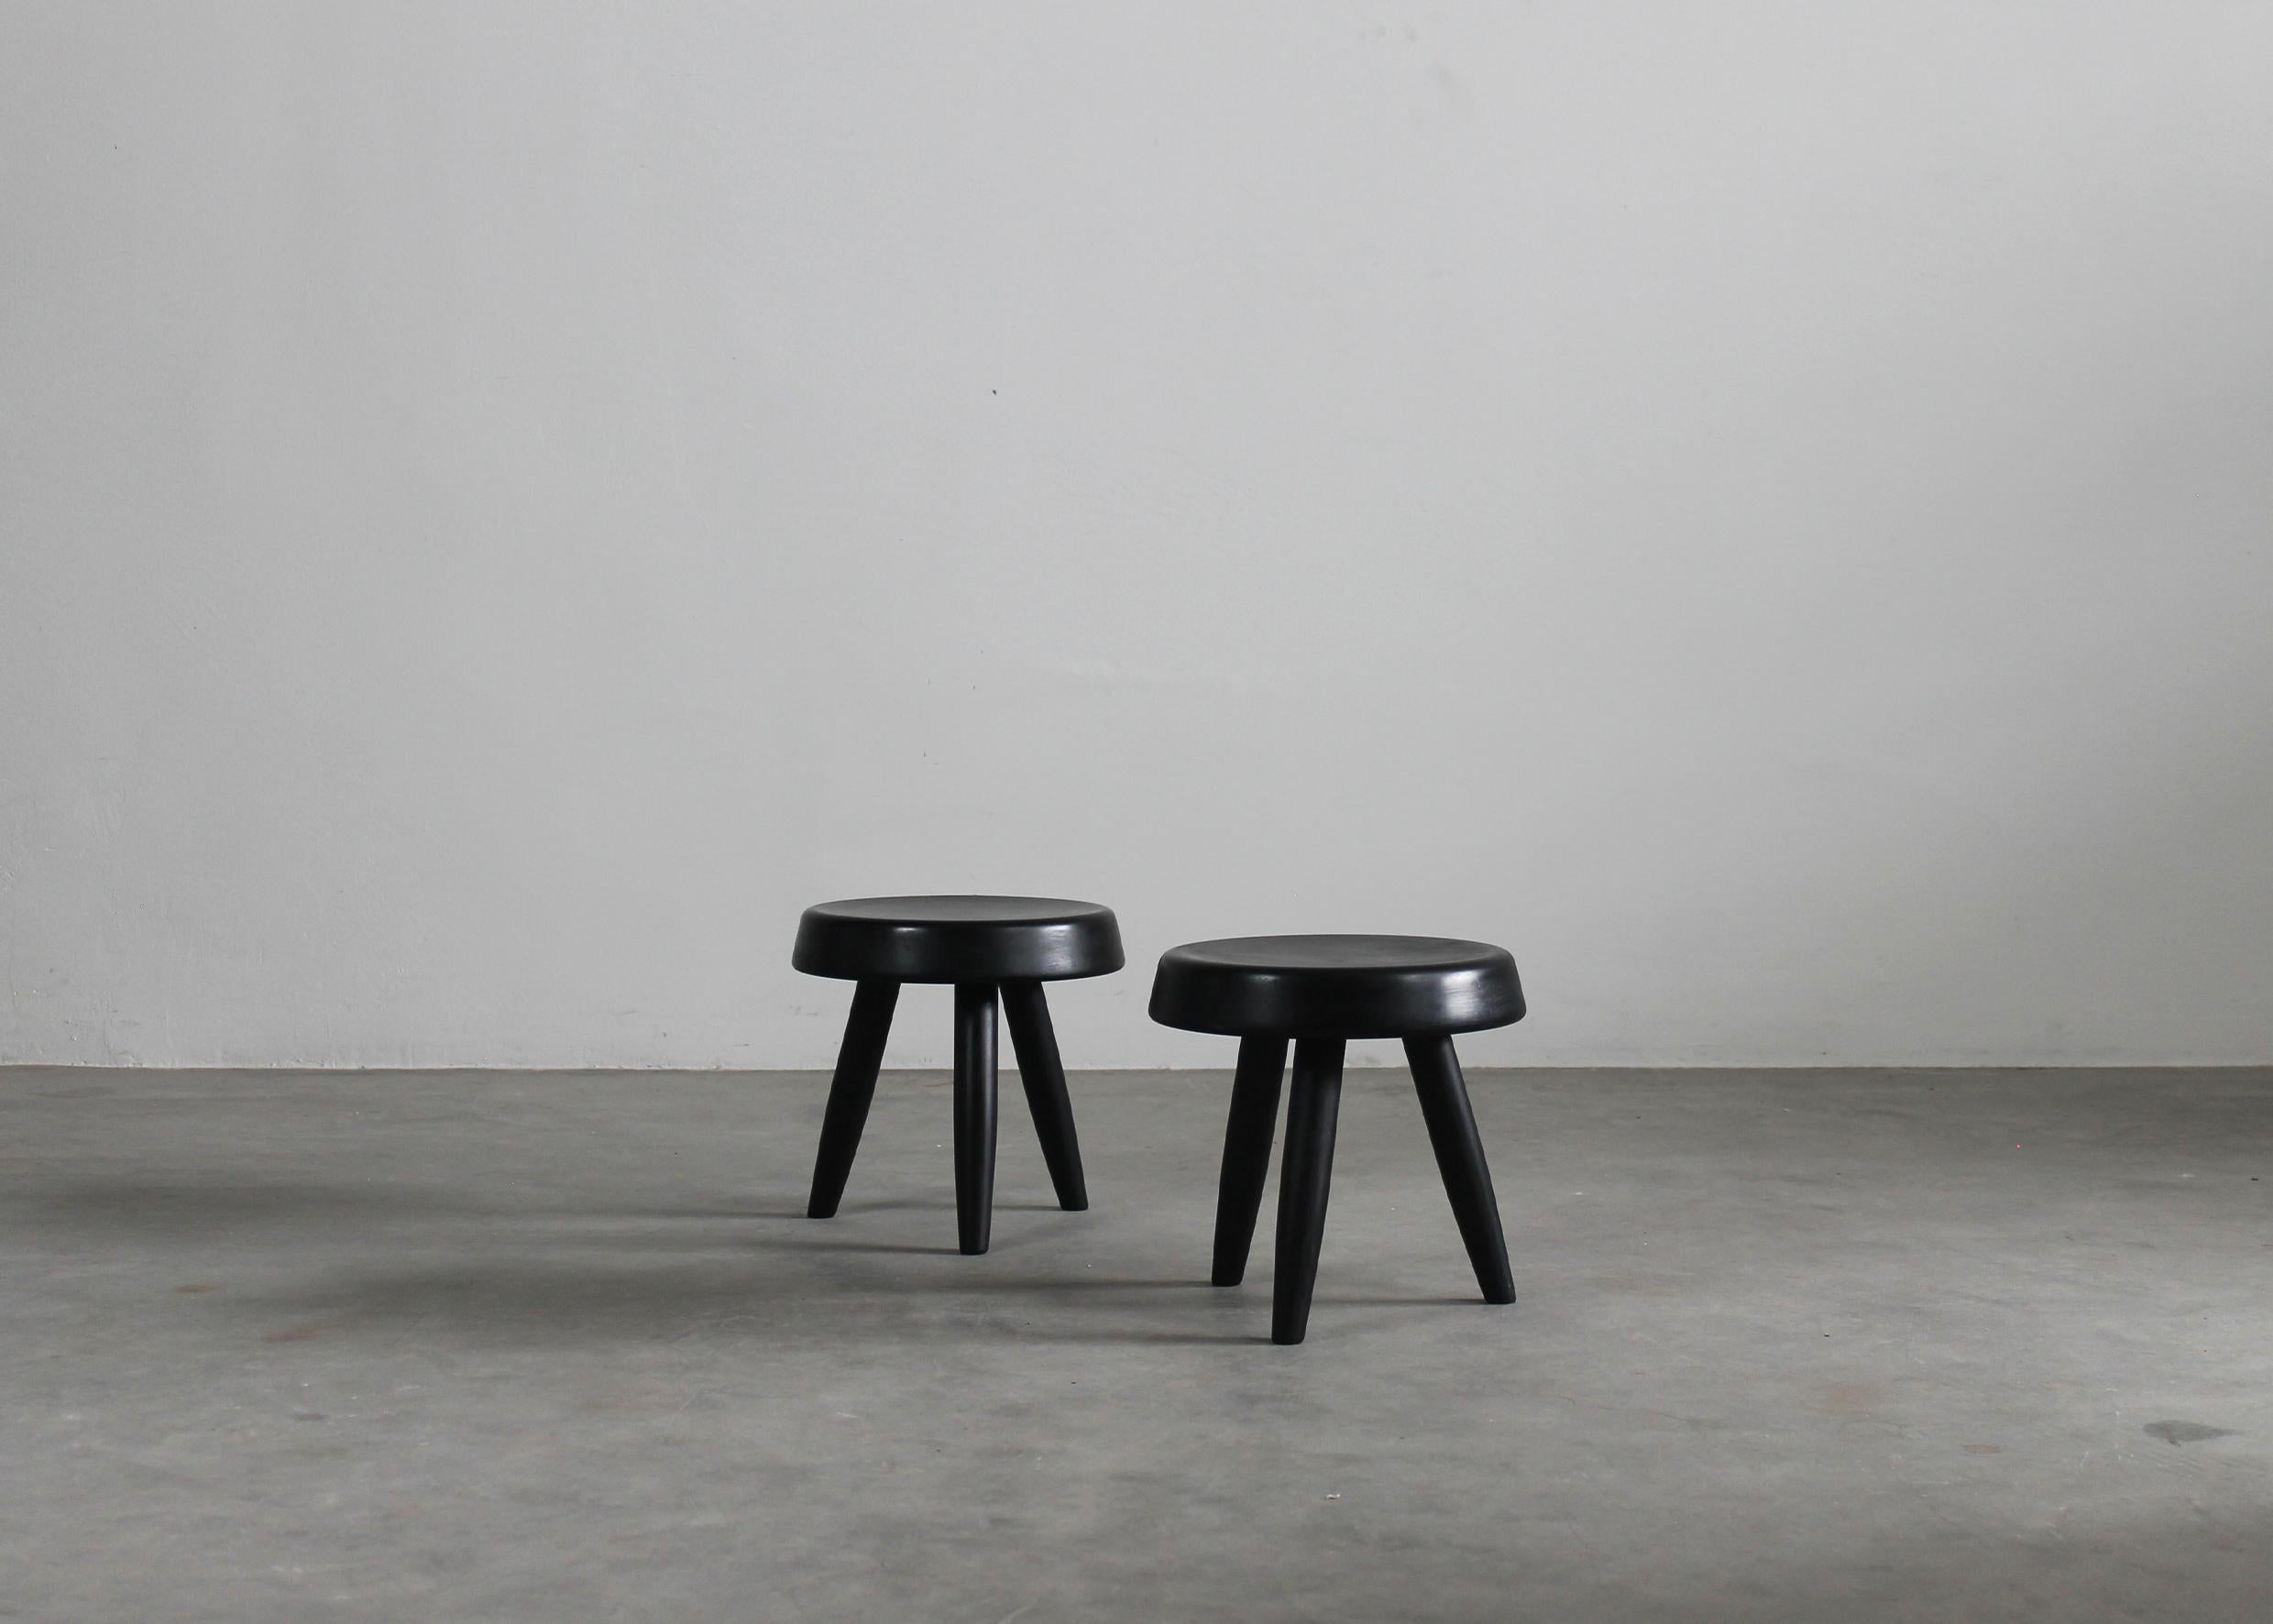 Set aus zwei Hockern mit drei Beinen, komplett aus schwarz gebeiztem Holz, entworfen im Stil von Charlotte Perriand und hergestellt in den 1950er Jahren. 

Charlotte Perriand (1903-1999) ist eine der bedeutendsten Möbeldesignerinnen der Mitte des